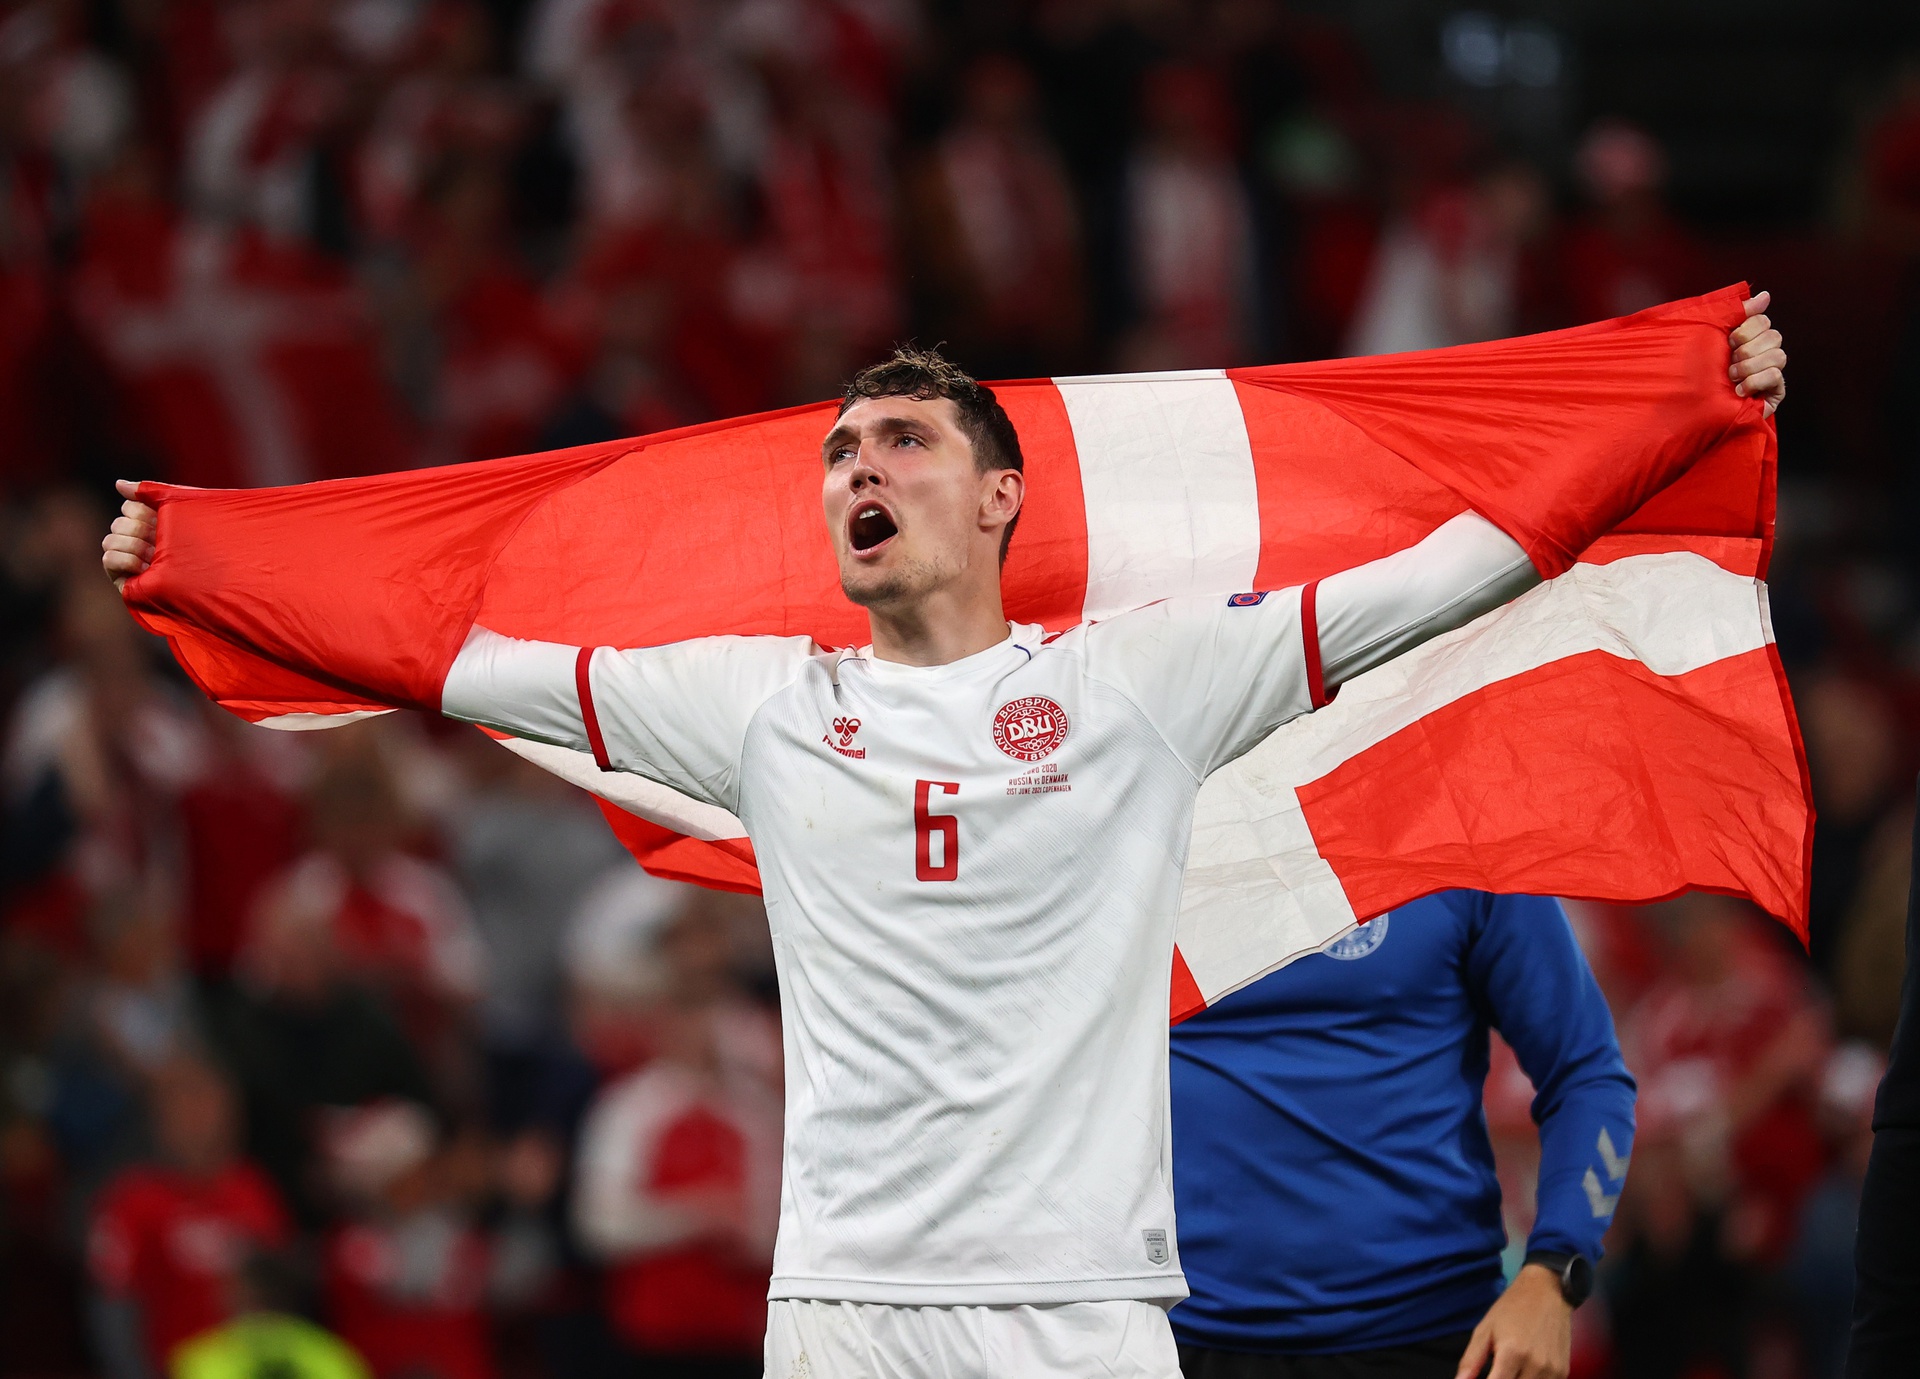 Cầu thủ Đan Mạch tự hào khoác quốc kỳ khi đôi nhà vượt qua nghịch cảnh giành vé vào vòng 1/8 Euro 2020